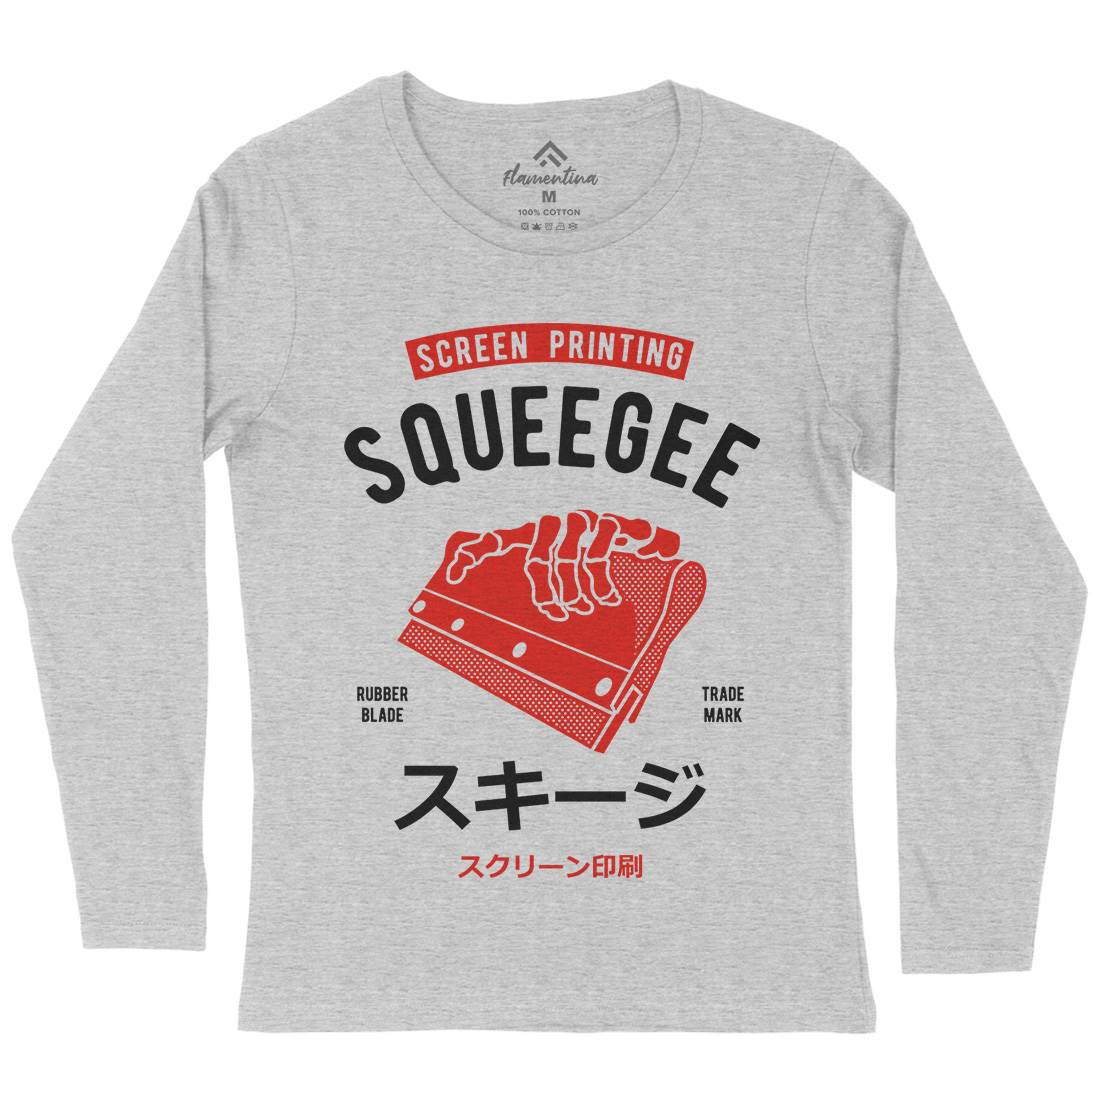 Squeegee Social Club Womens Long Sleeve T-Shirt Work A282